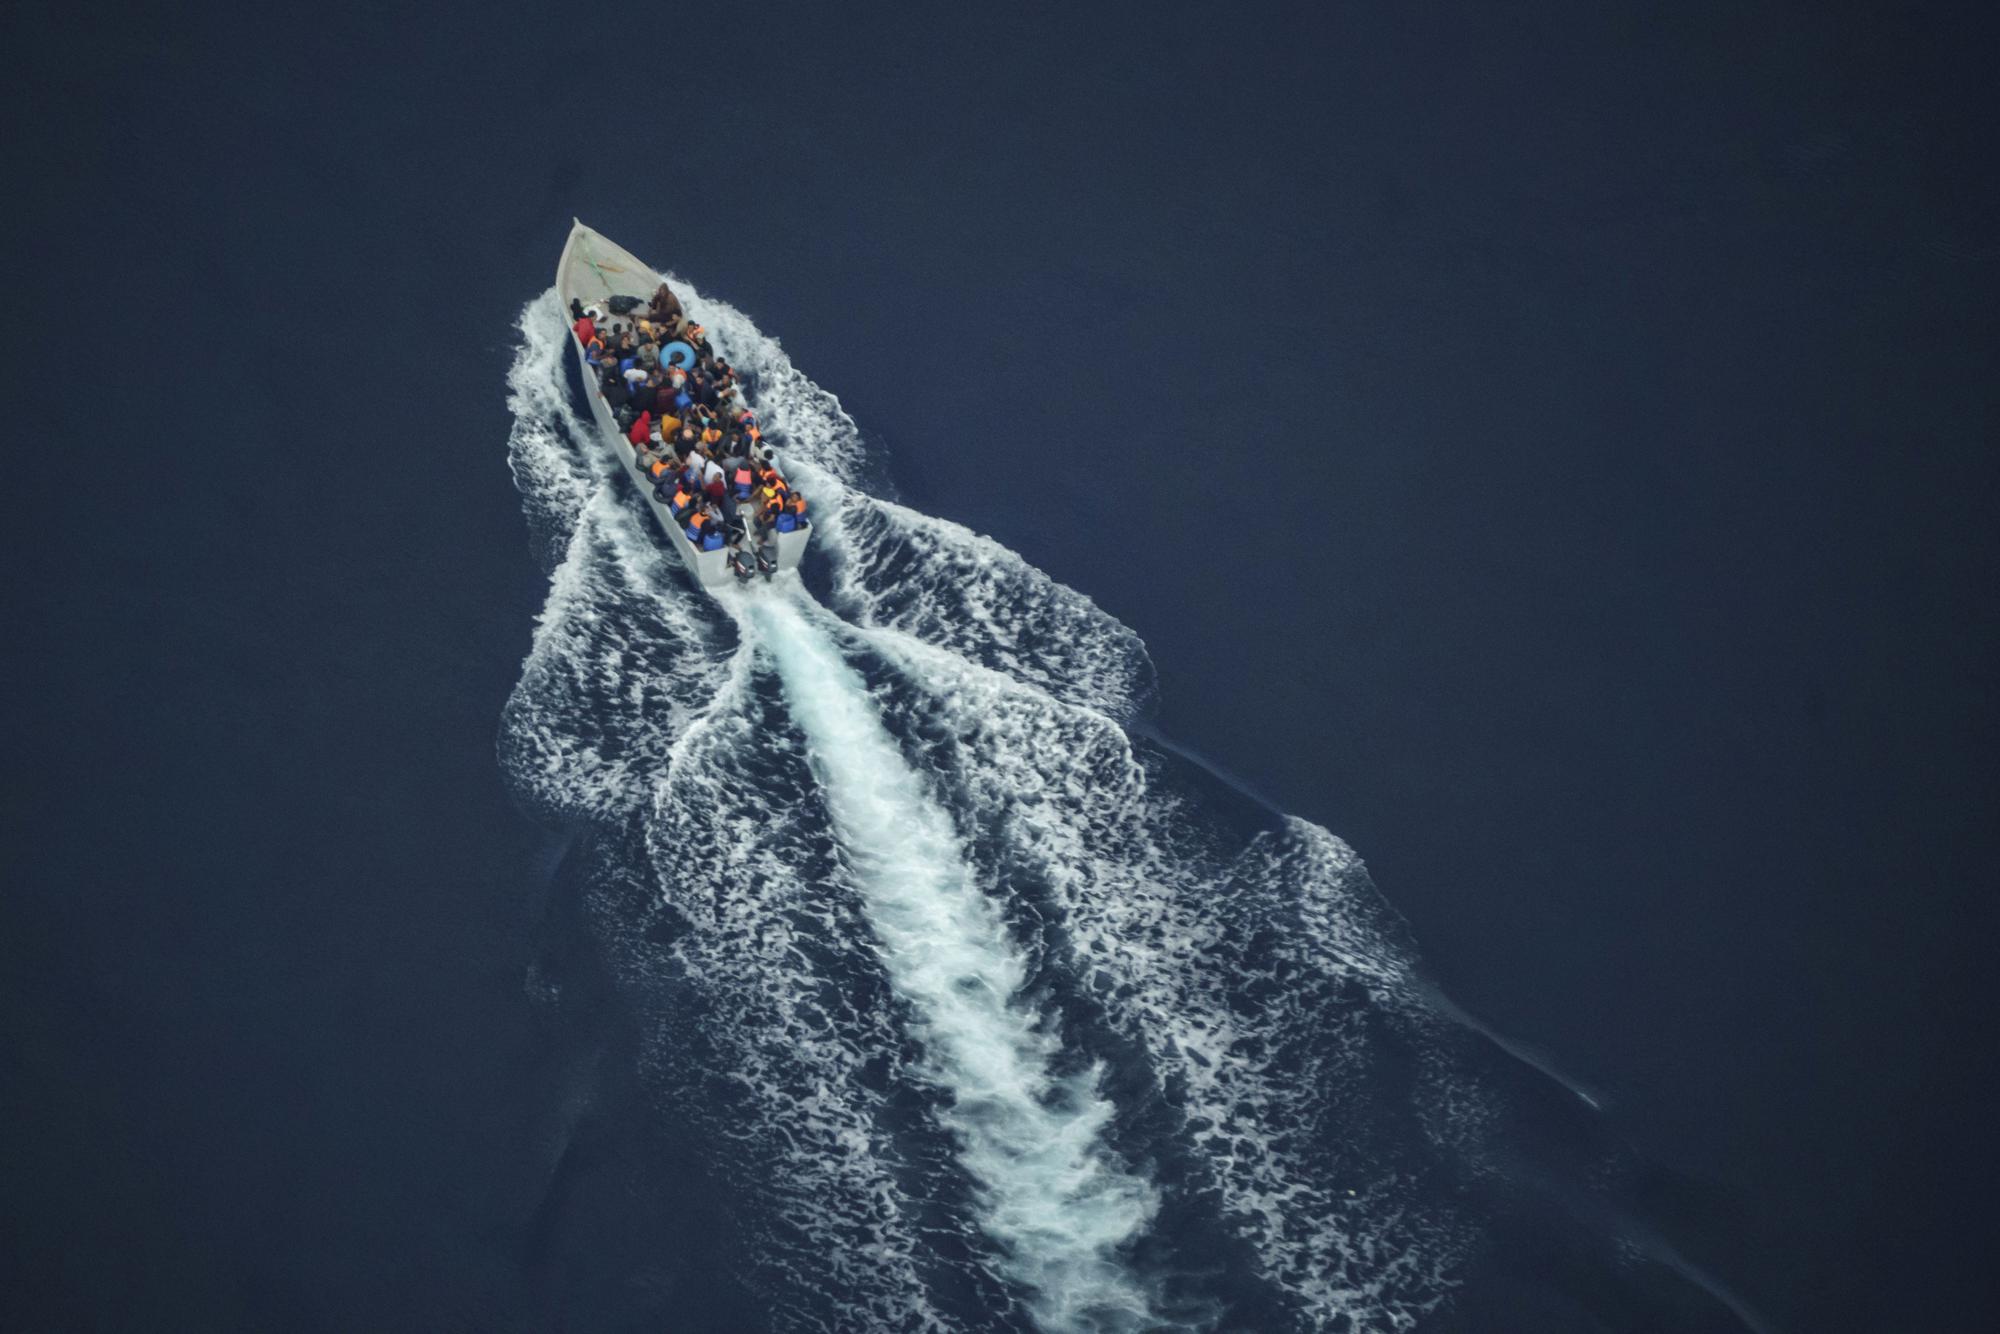 Κύθηρα: Δίχως τέλος το προσφυγικό δράμα – Τρίτο σκάφος με 67 πρόσφυγες μέσα σε ένα 24ωρο